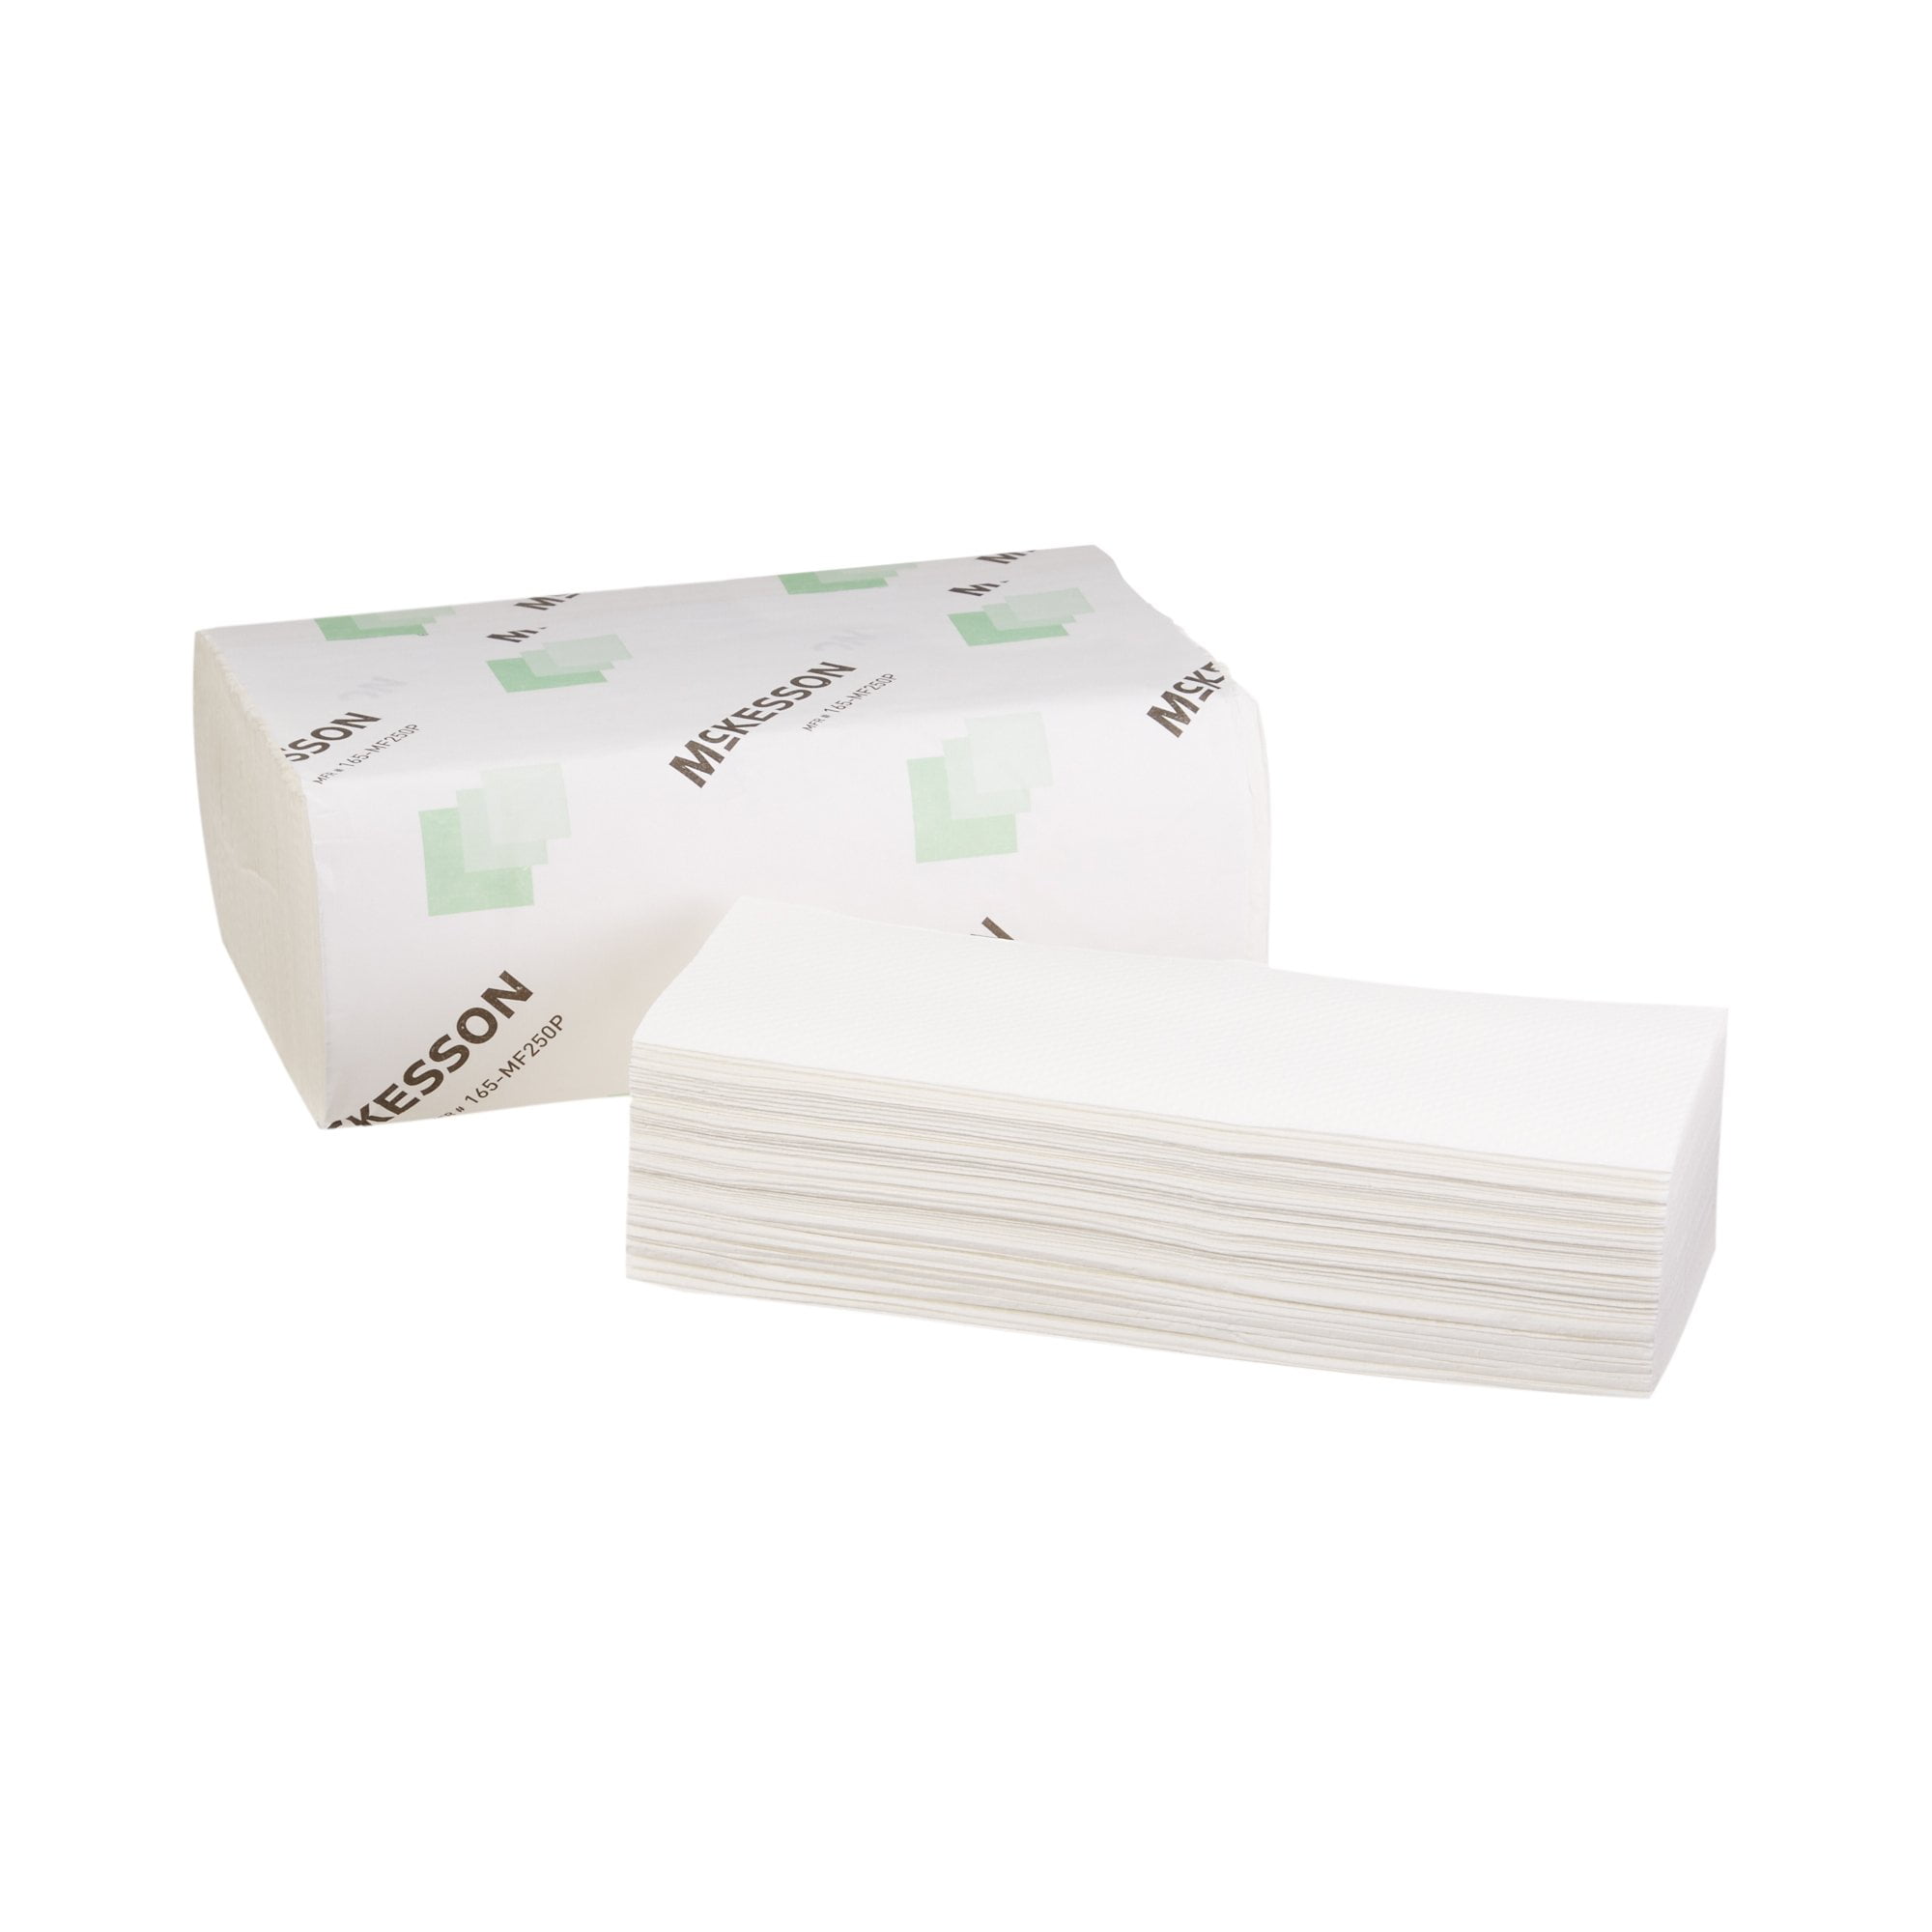 GP 21000 Signature 2-Ply Premium Multifold Paper Towel White,9.2" x 9.4" 2000ct 